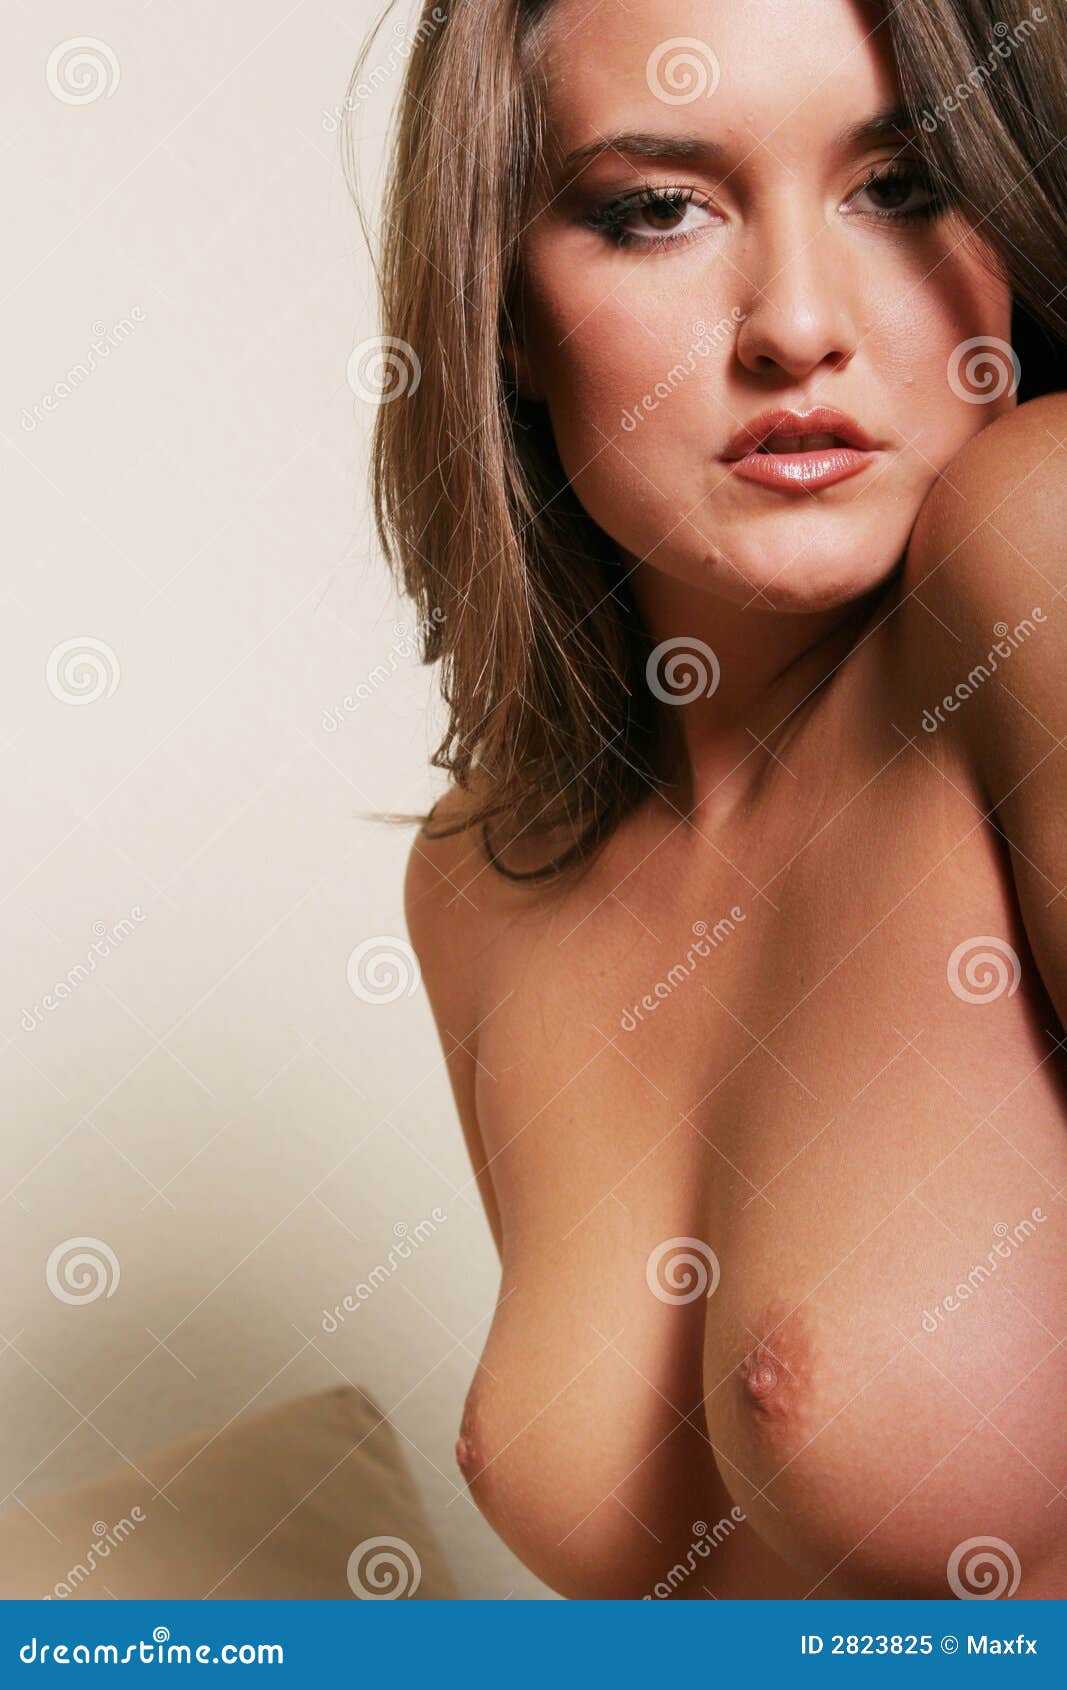 Hot Women Topless 106